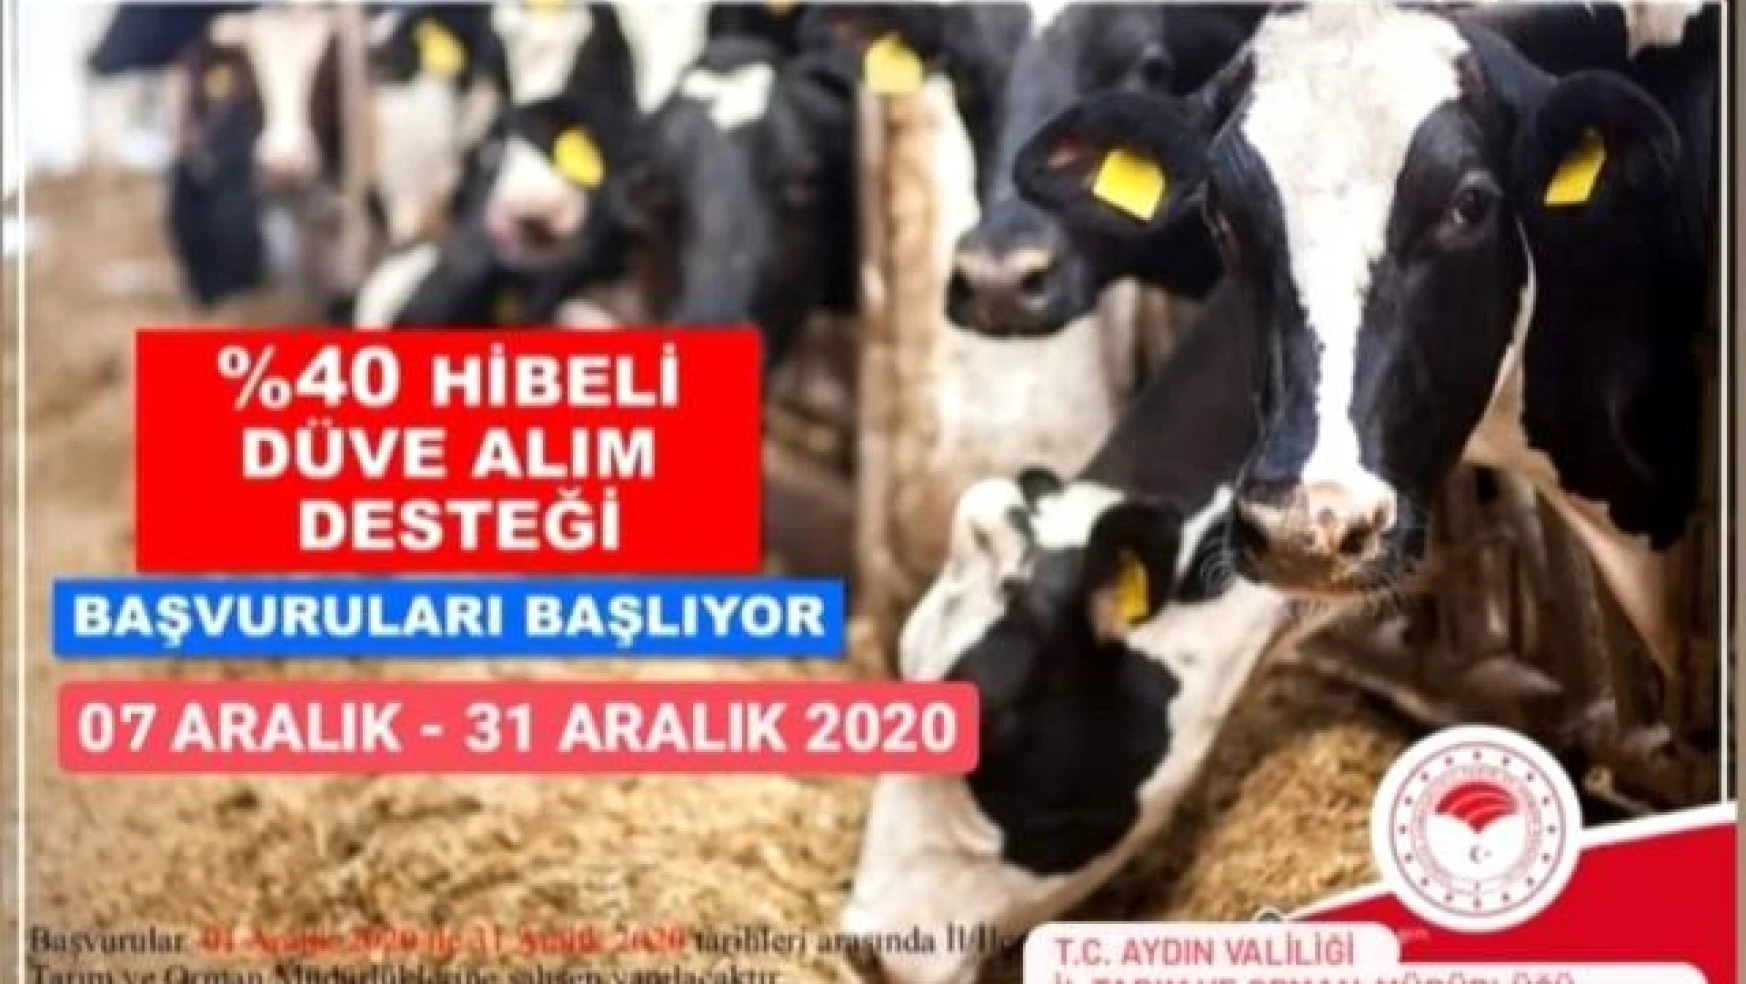 Aydın'da çiftçilere düve alım desteği verilecek